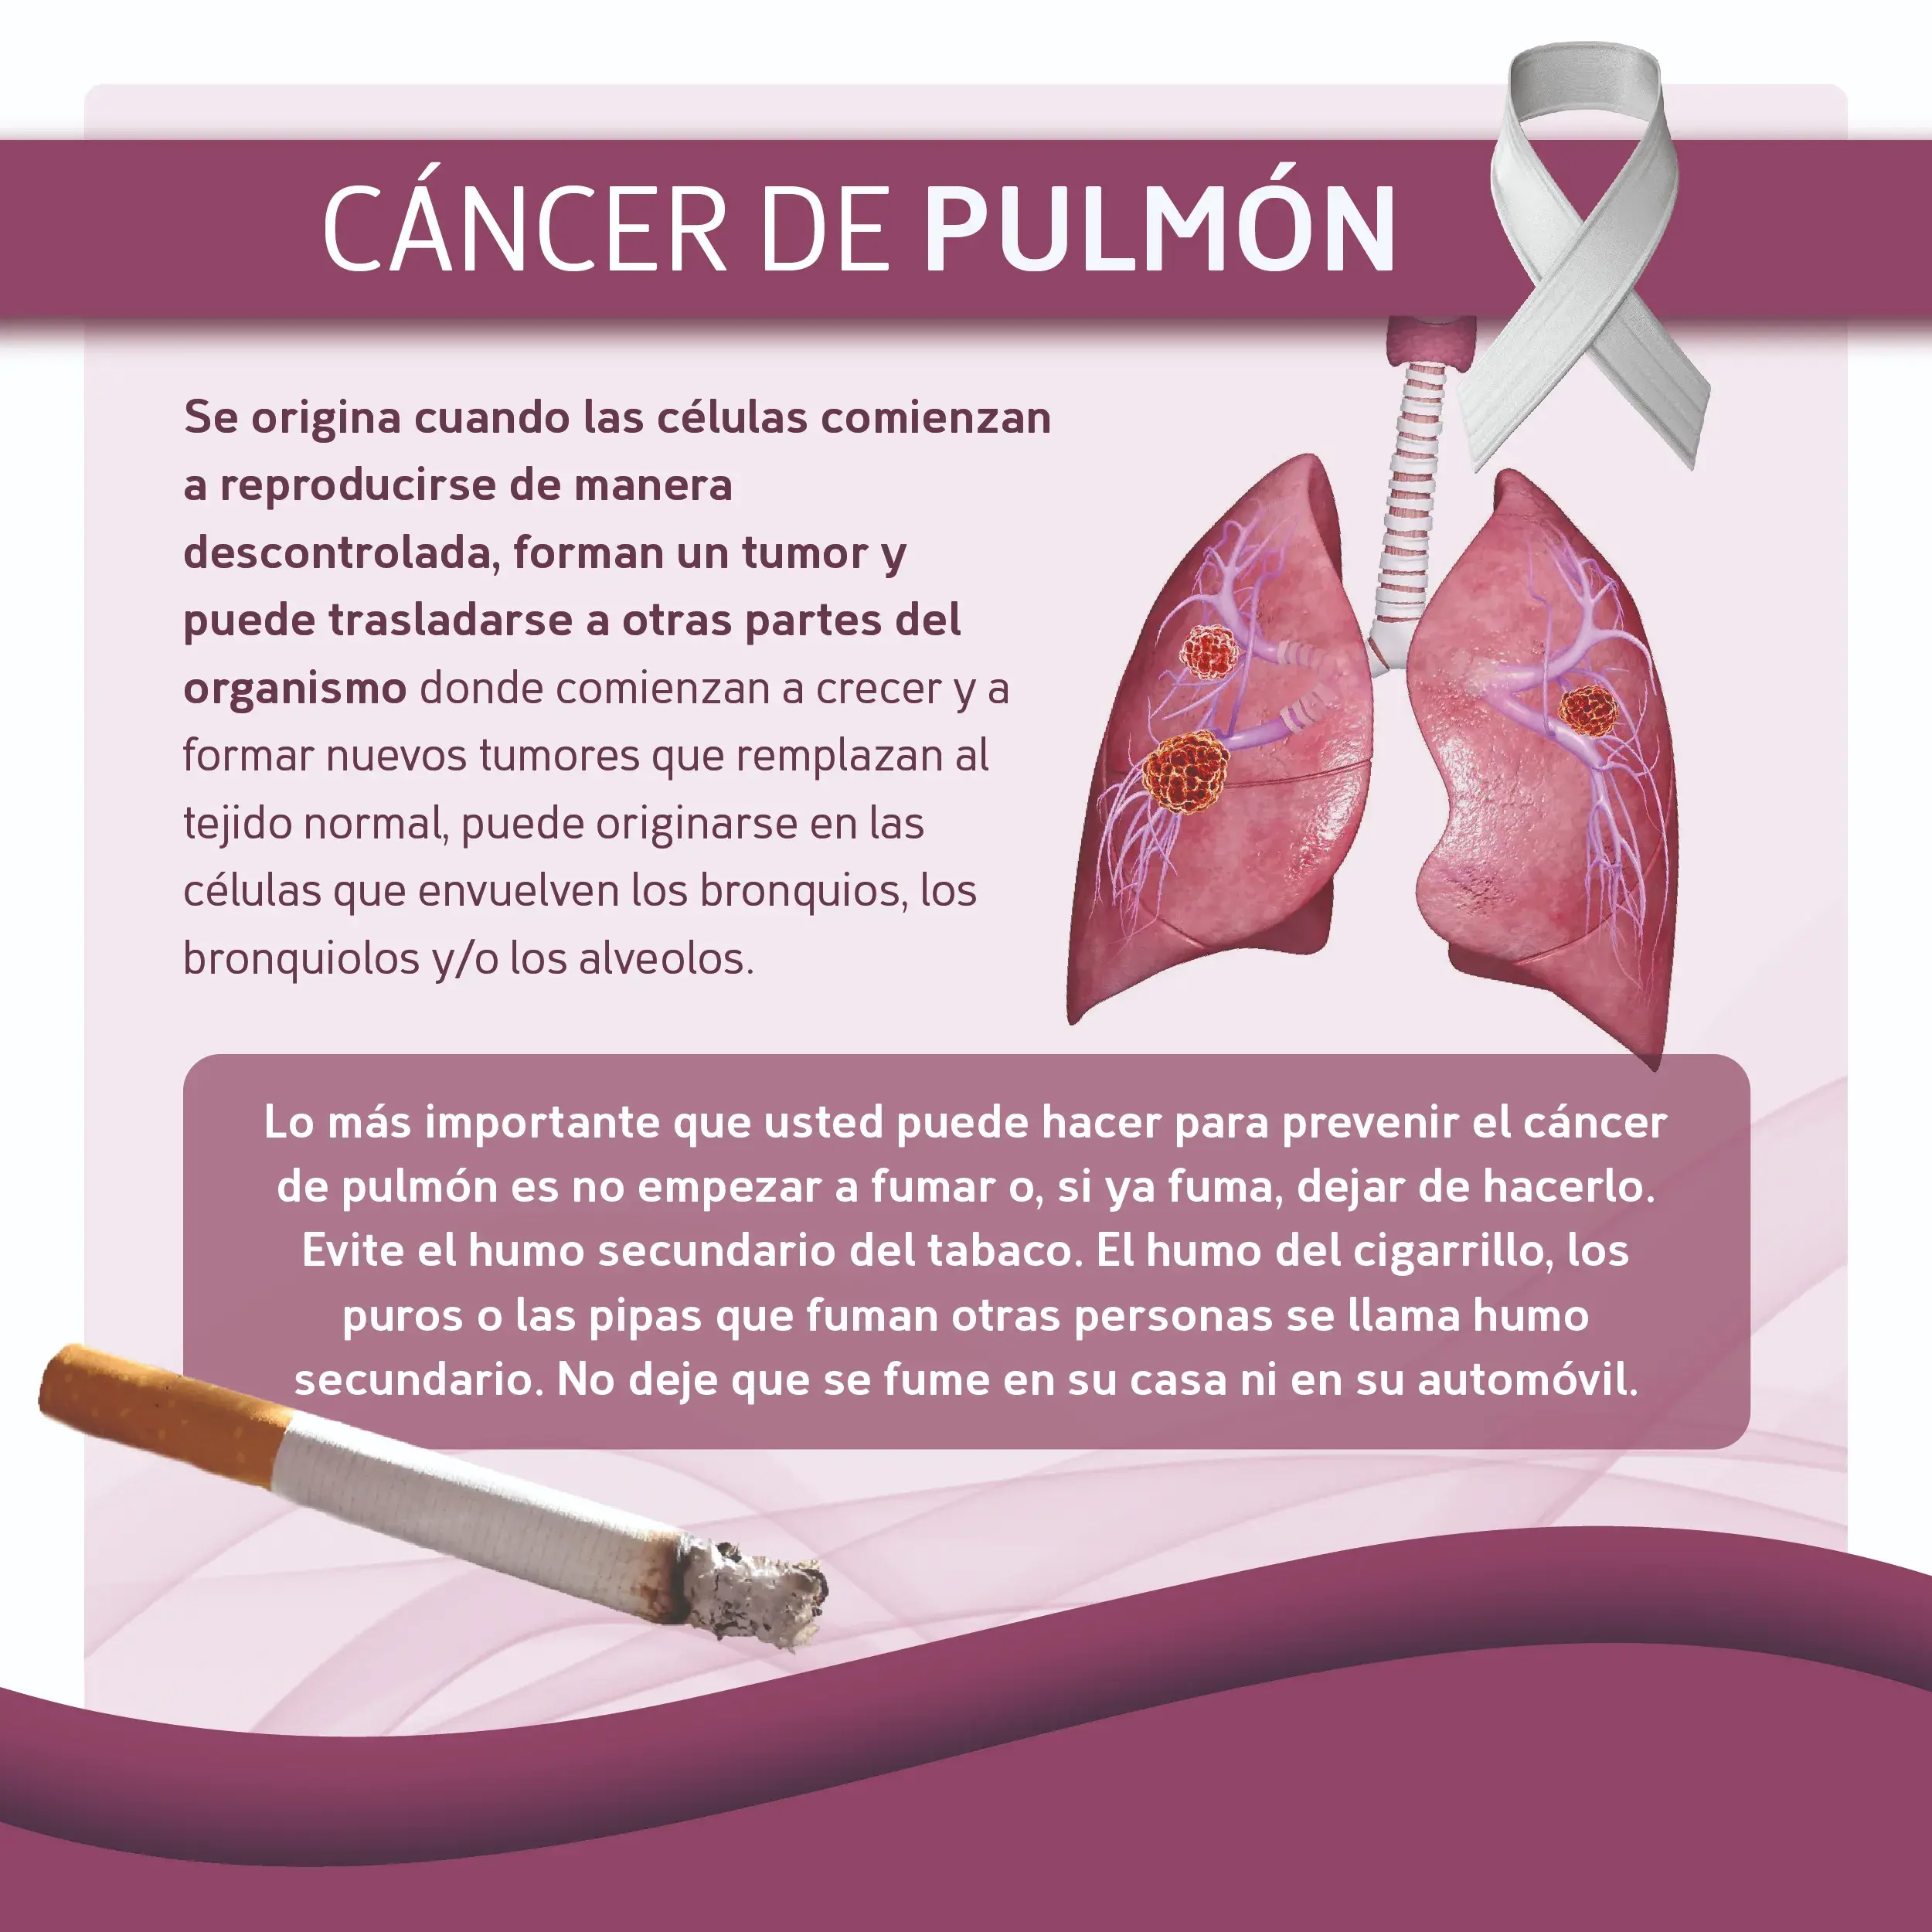 Un factor de riesgo del cáncer de pulmón es ser fumador